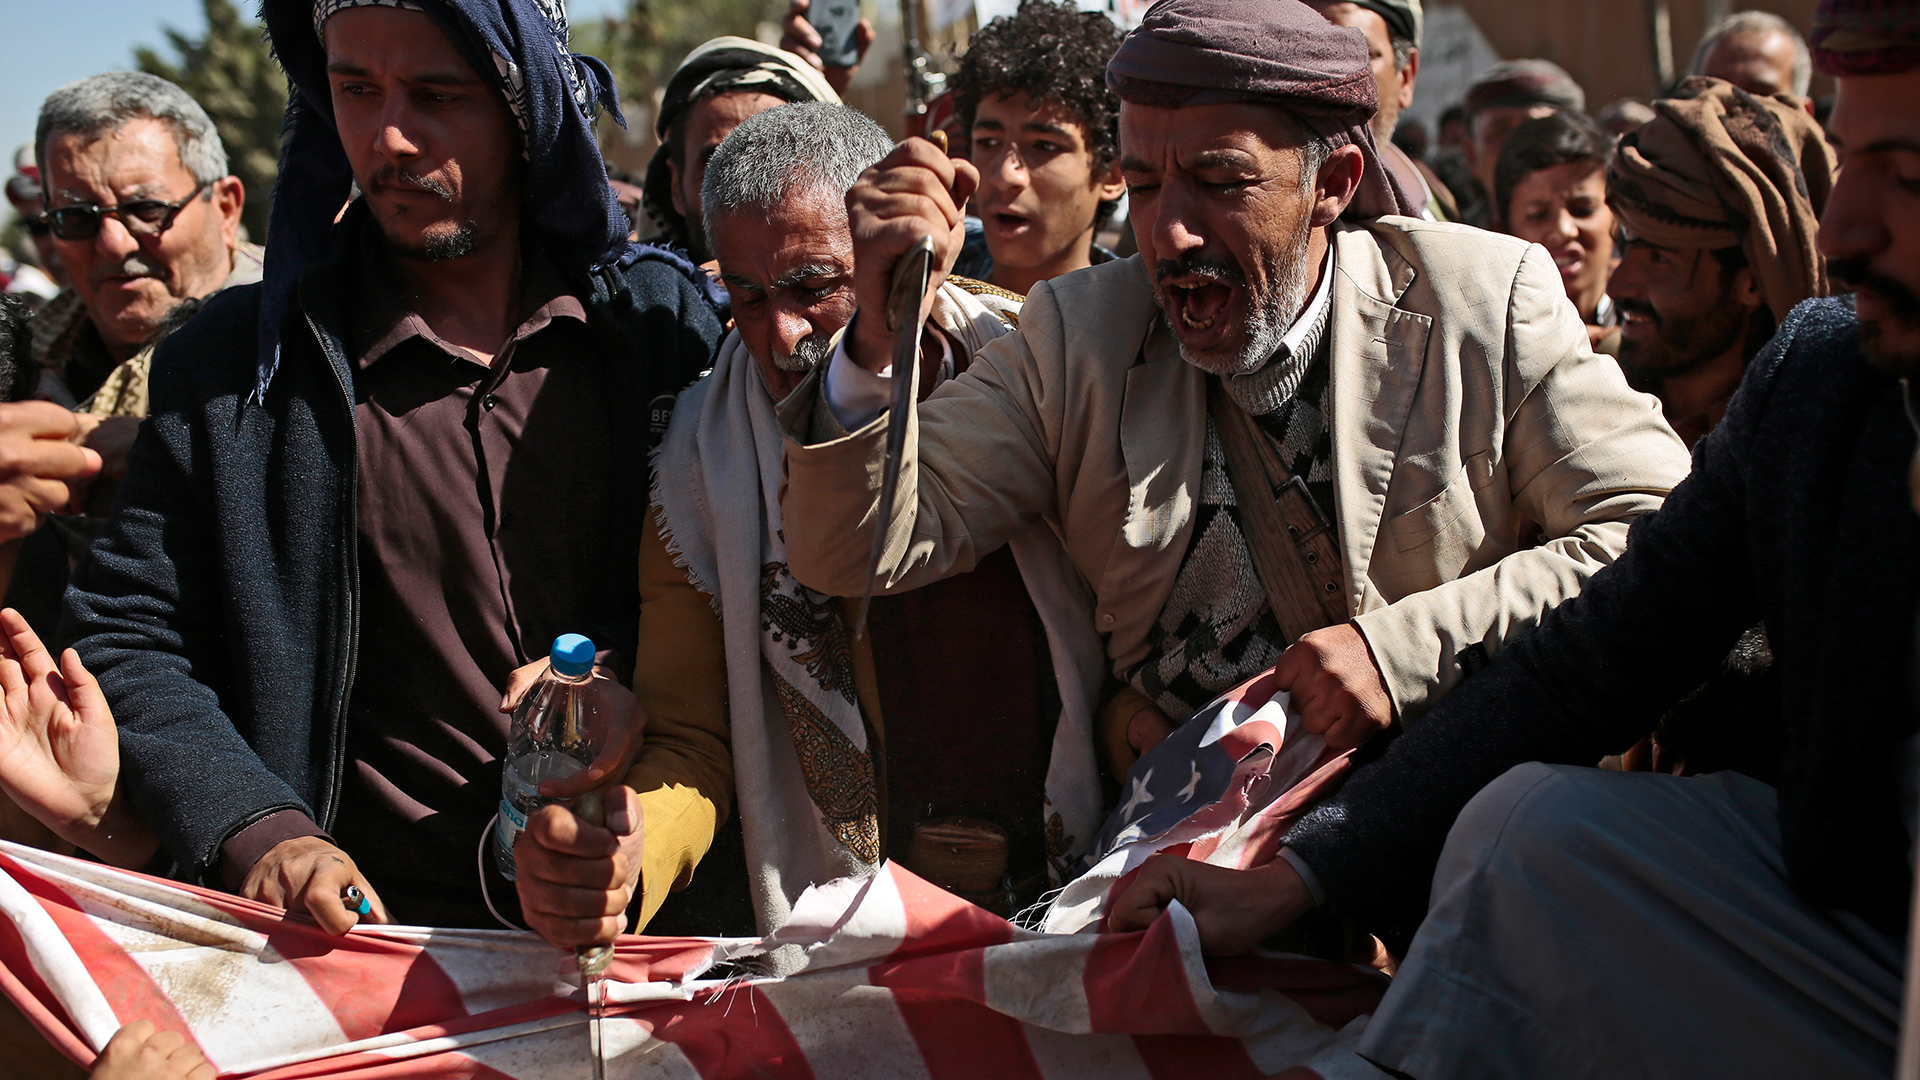 Anhänger der jemenitischen Huthi-Bewegung stechen mit Messern auf eine US-Flagge ein. (Archivbild)| Bildquelle: dpa